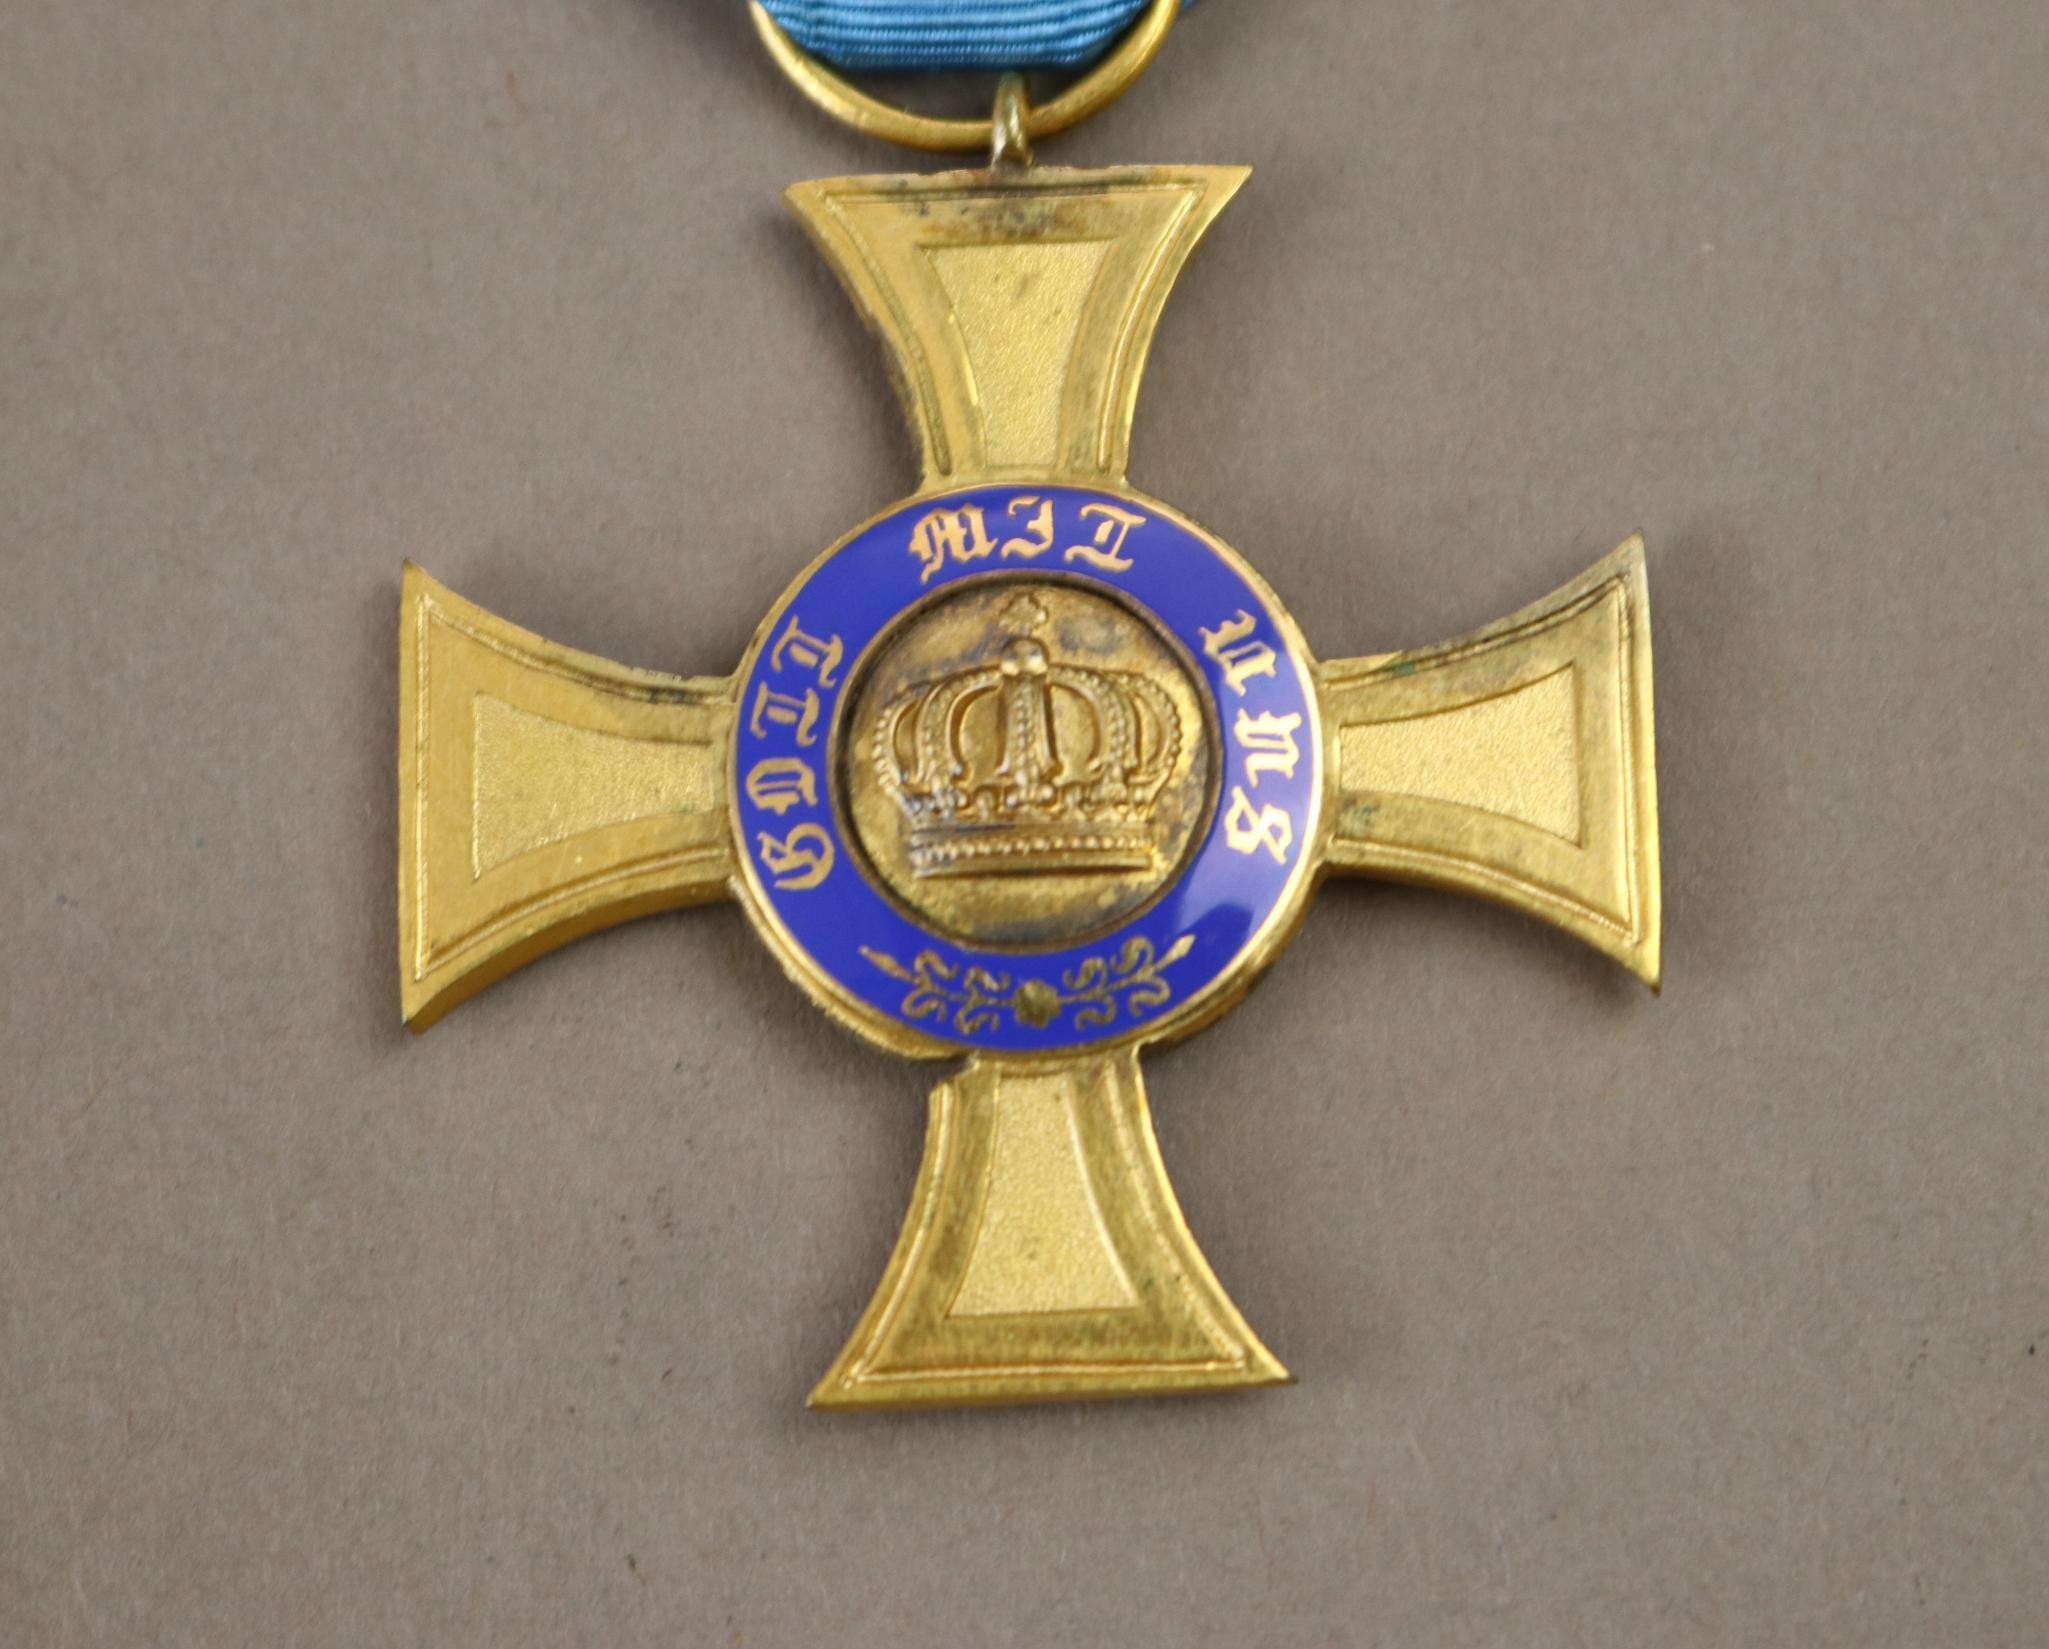 German (Prussian) Medal